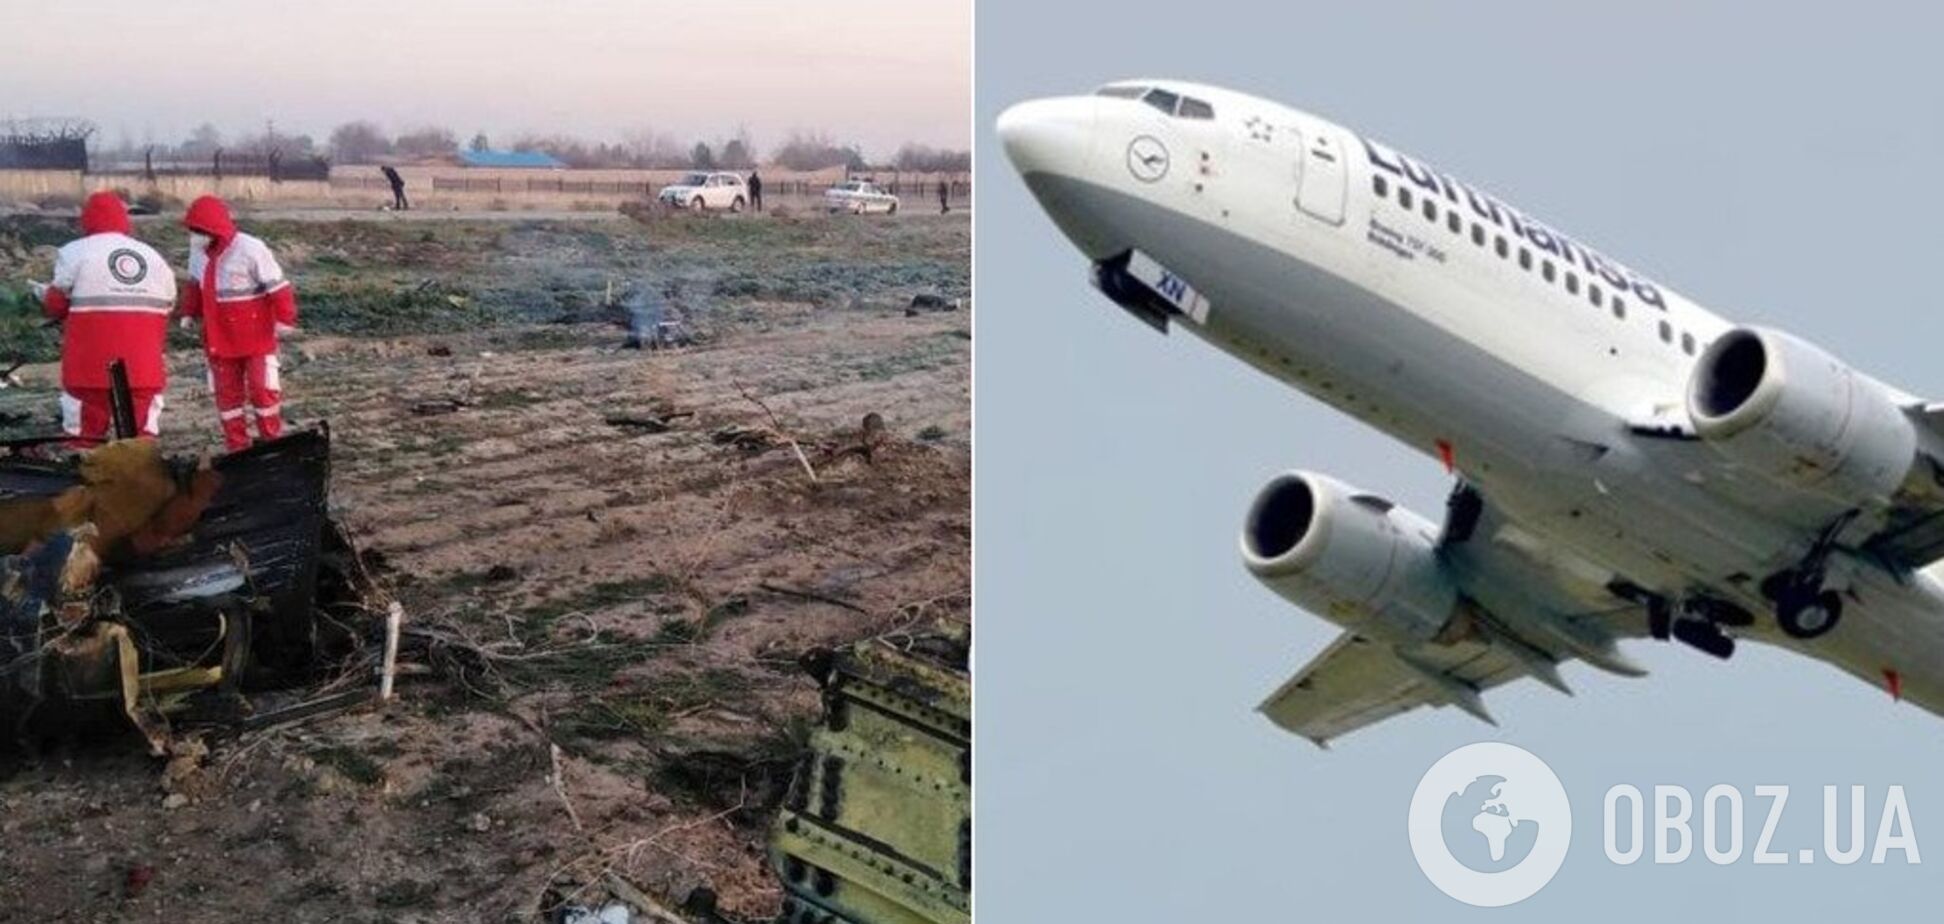 The New York Times подробно воспроизвел трагический рейс украинского самолета в Иране: видео